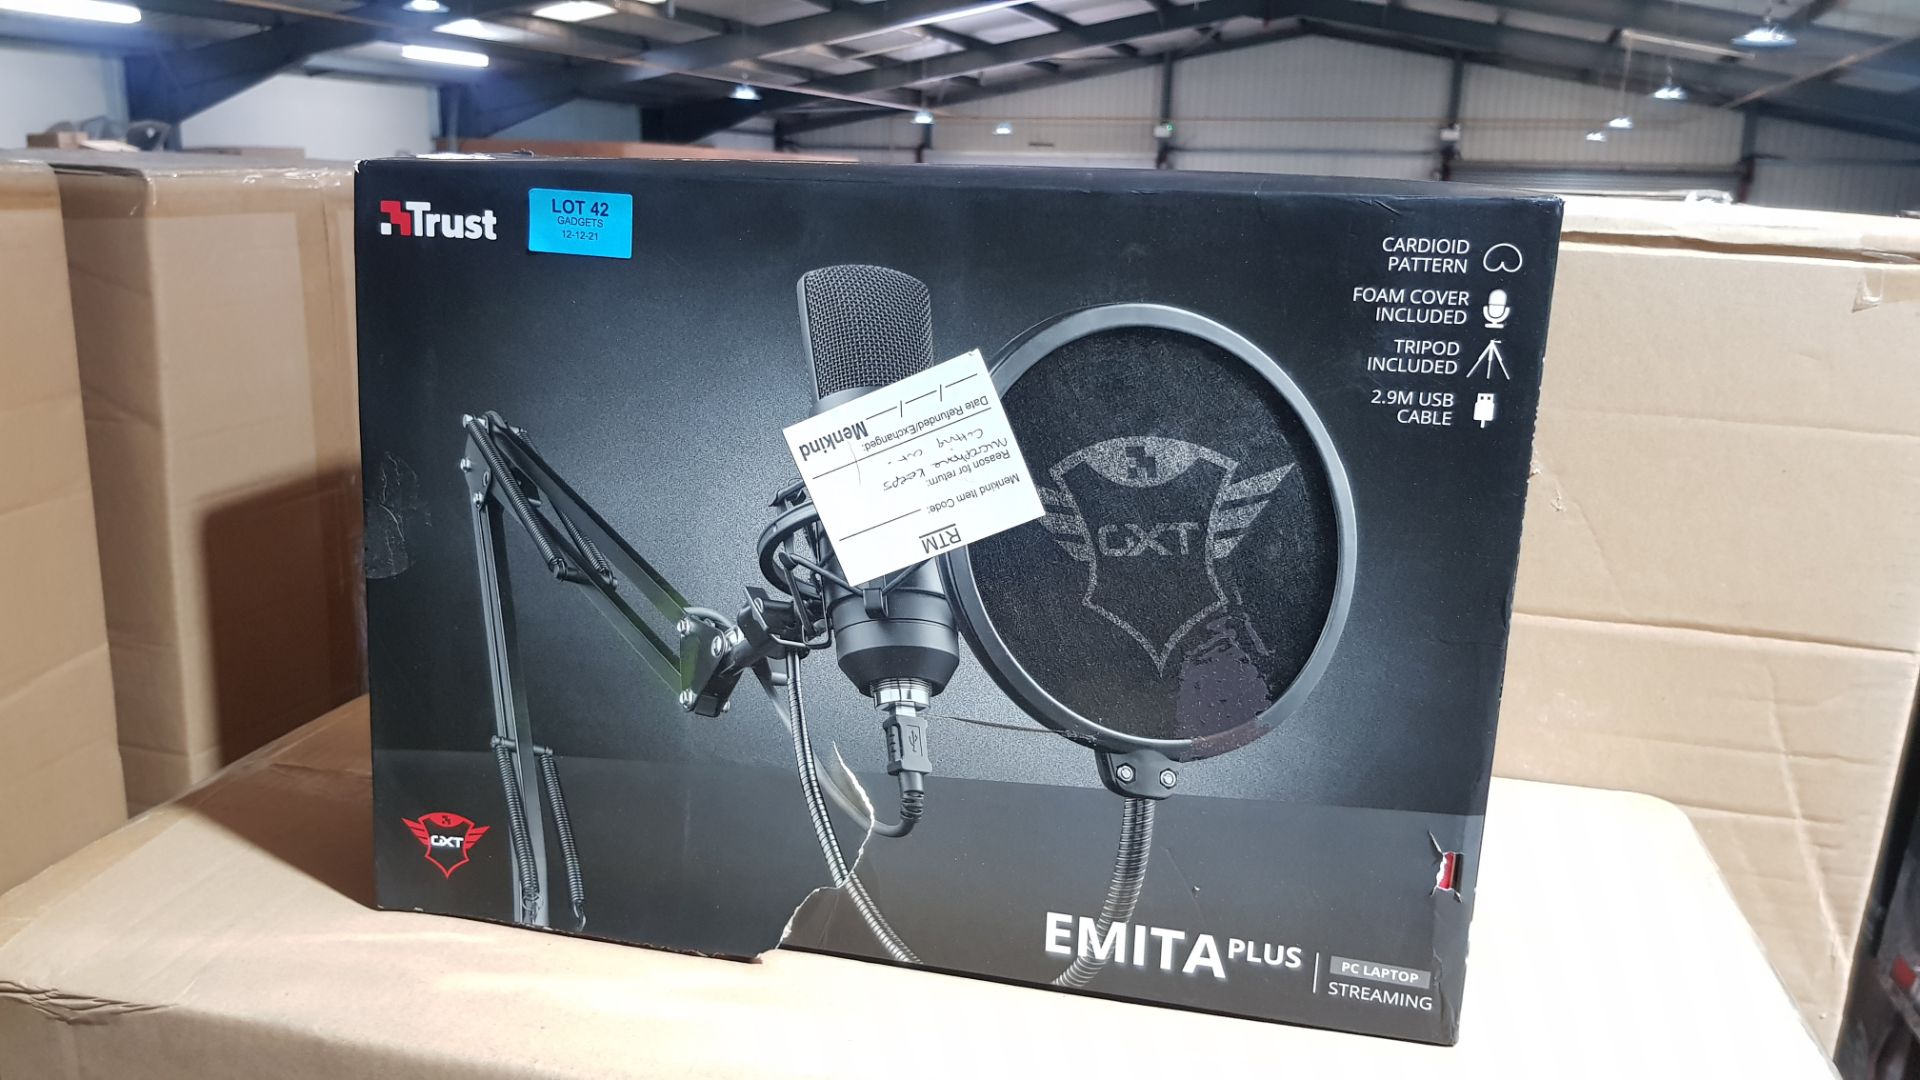 (P1) 1x Trust GXT 257 Emita Plus Studio Microphone With Extendable Arm RRP £89.99. (Unit Has Retur - Image 2 of 2